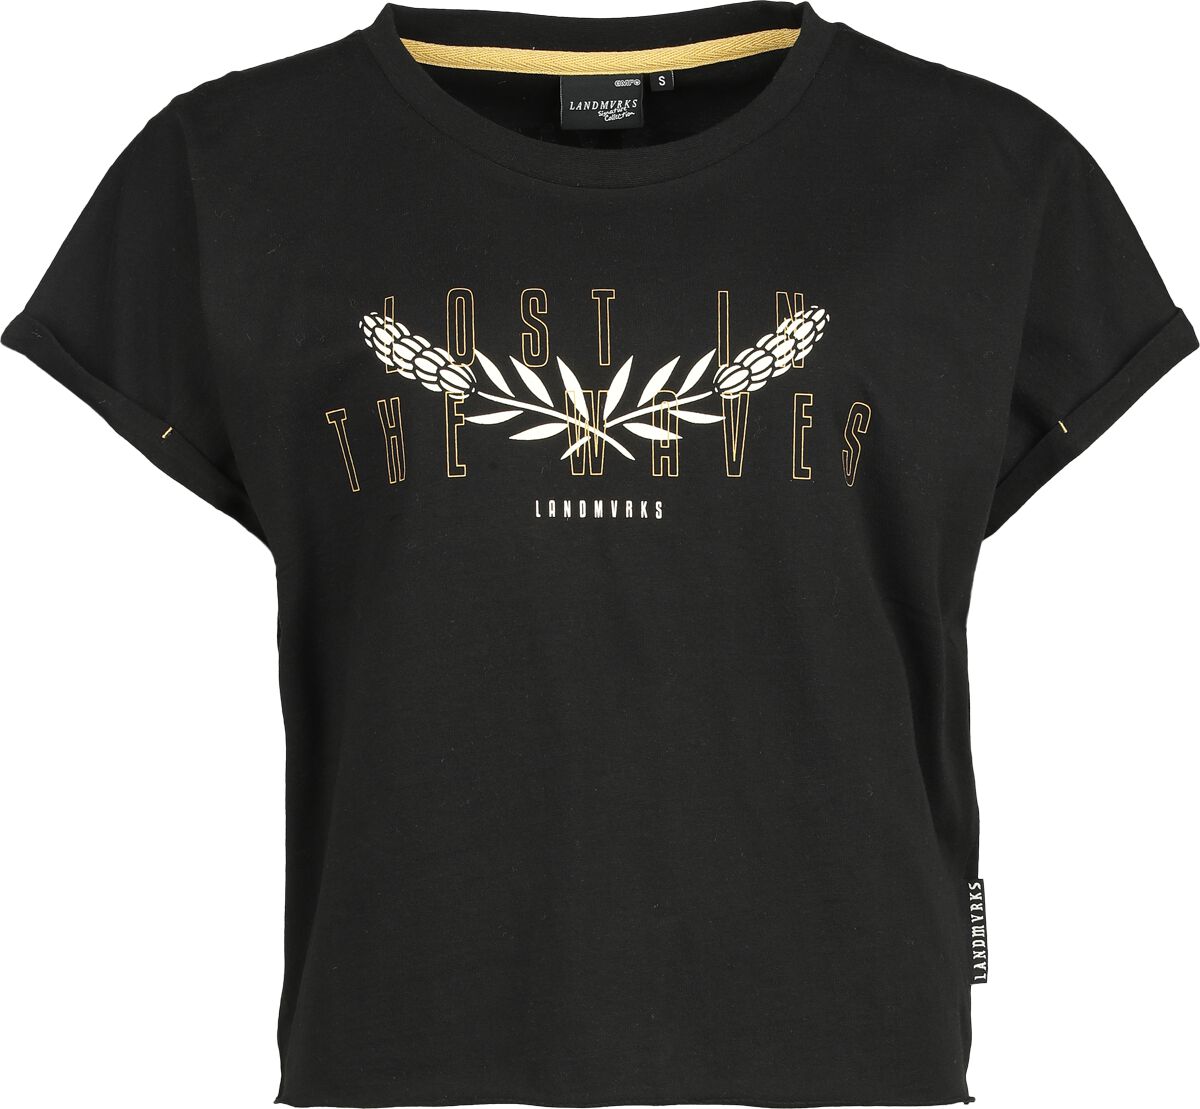 Landmvrks T-Shirt - EMP Signature Collection - XS bis 3XL - für Damen - Größe 3XL - schwarz  - EMP exklusives Merchandise!